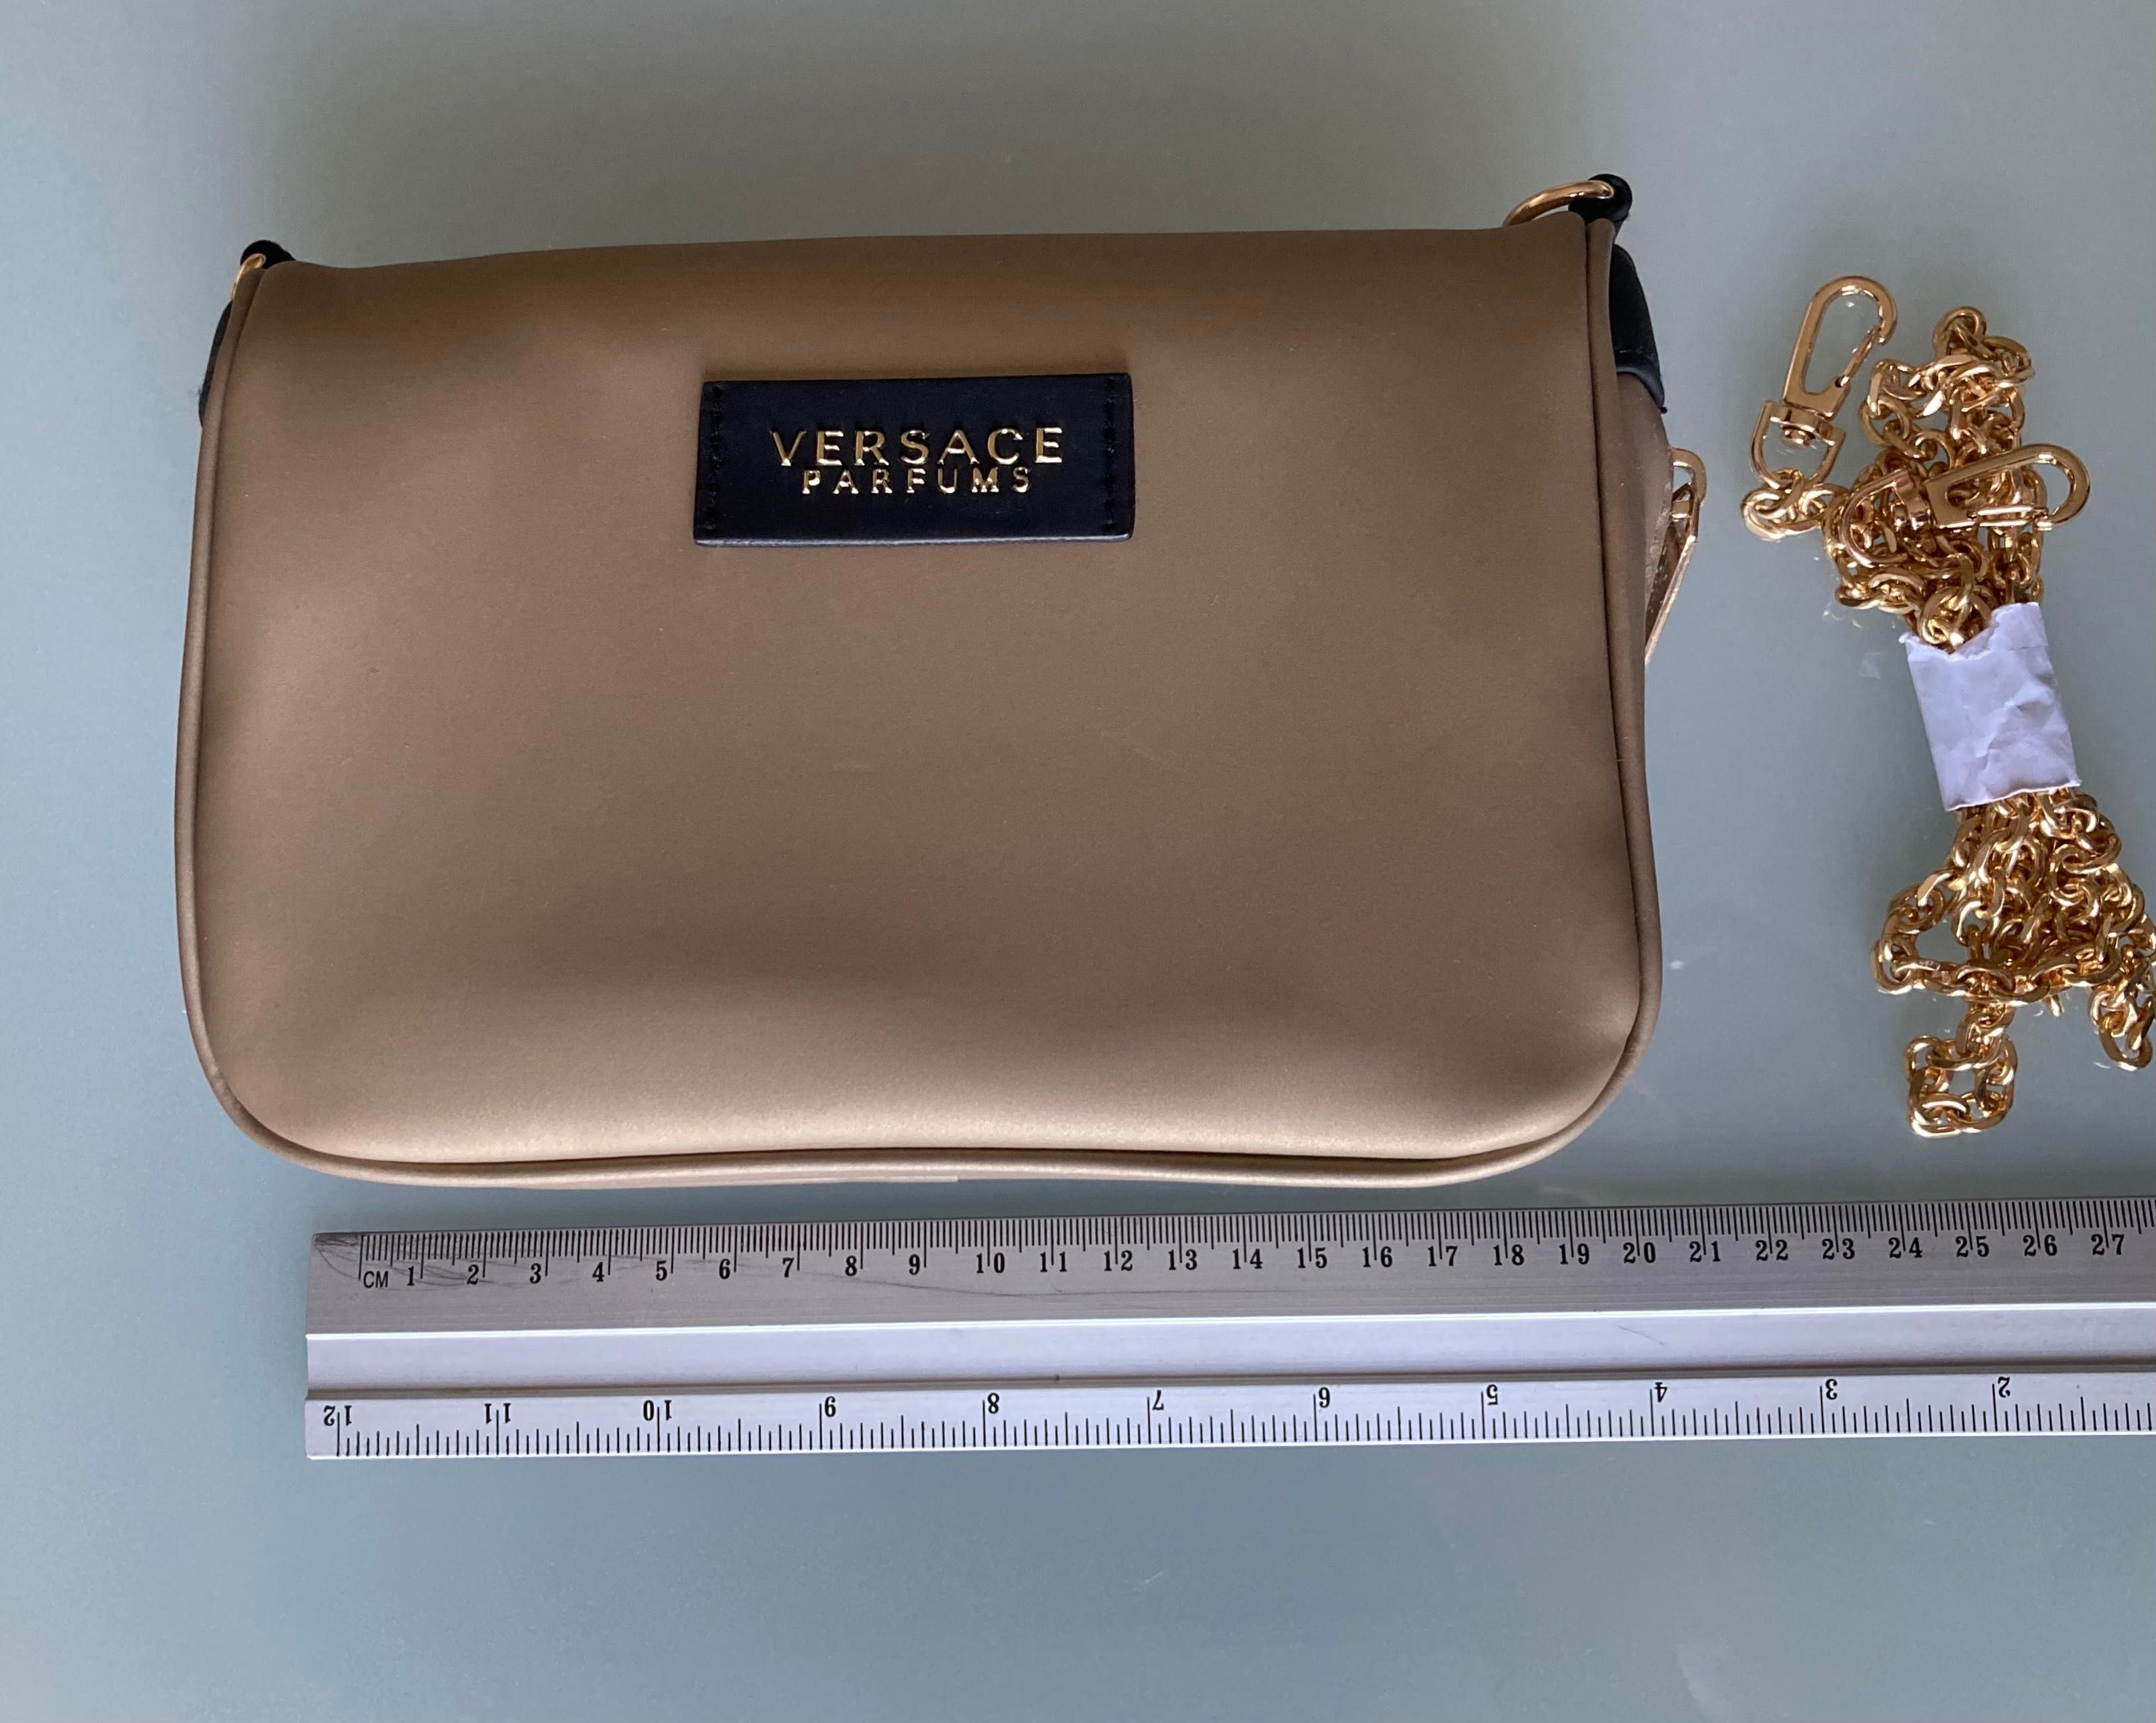 Kosmetyczka/torba kopertowa Versace